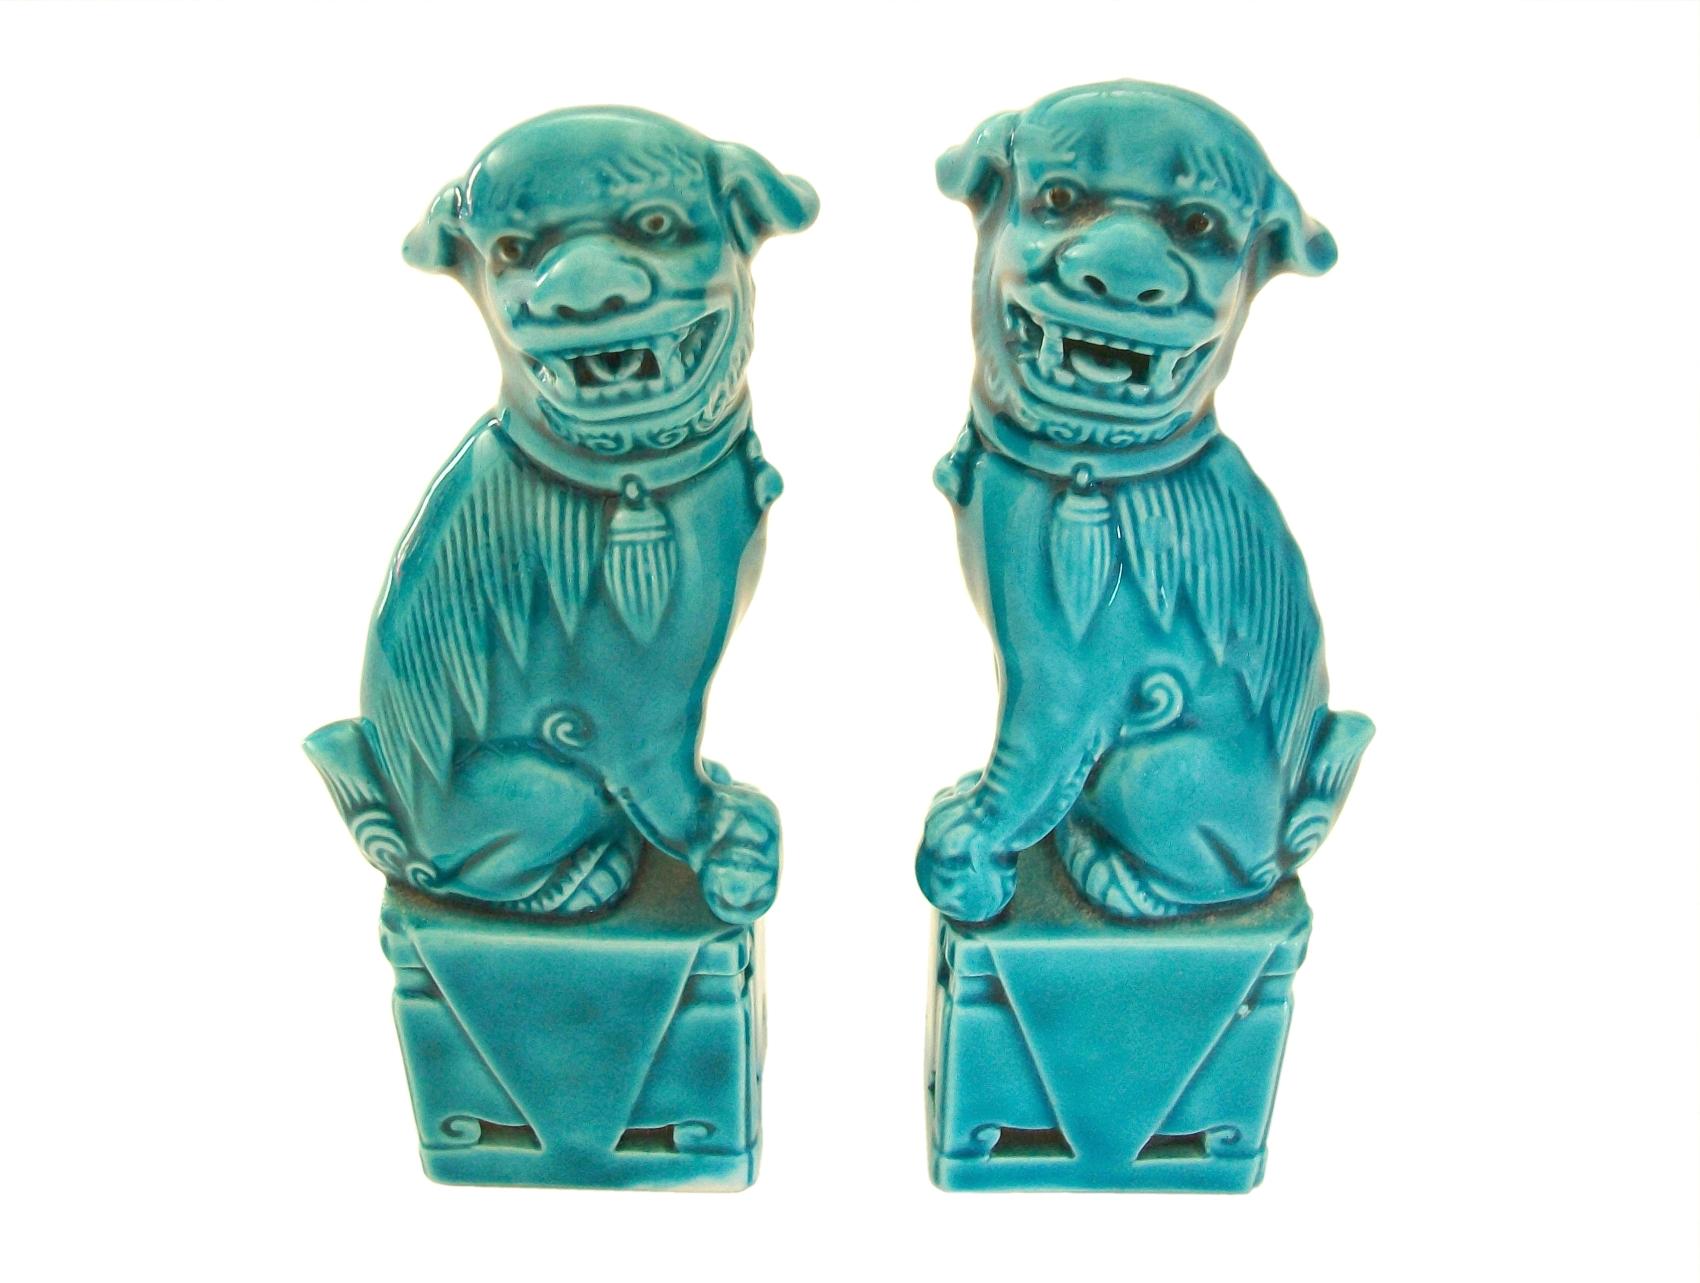 Paire miniature de chiens Foo en céramique émaillée turquoise - formes moulées - glaçure brillante peinte à la main - non signée - Chine - circa 1980's.

Excellent état vintage - écaille mineure de glaçure / puce à une oreille (apparaît comme de